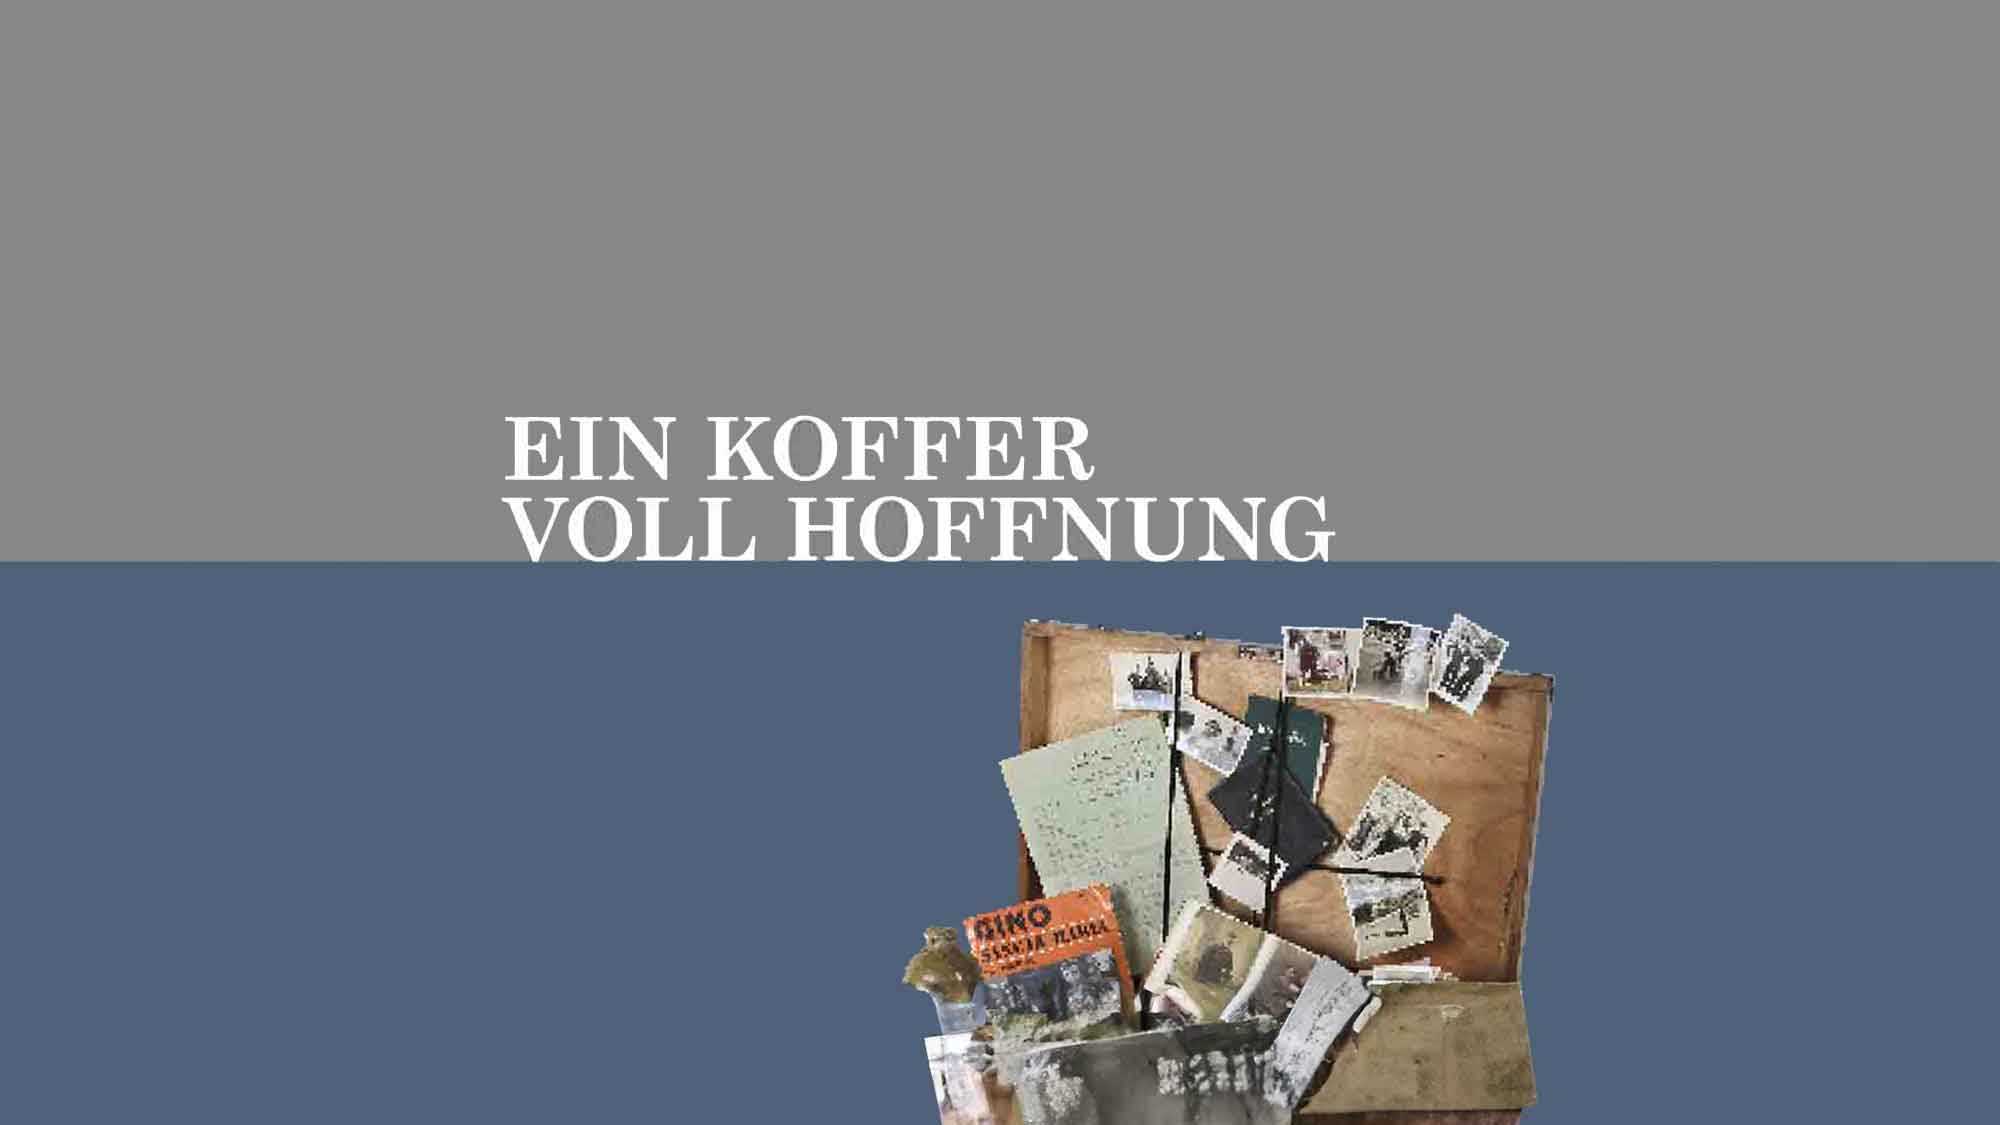 Virtuelle Ausstellung in Gütersloh: Ein Koffer voll Hoffnung mit kostenlosem E-Book zum Download